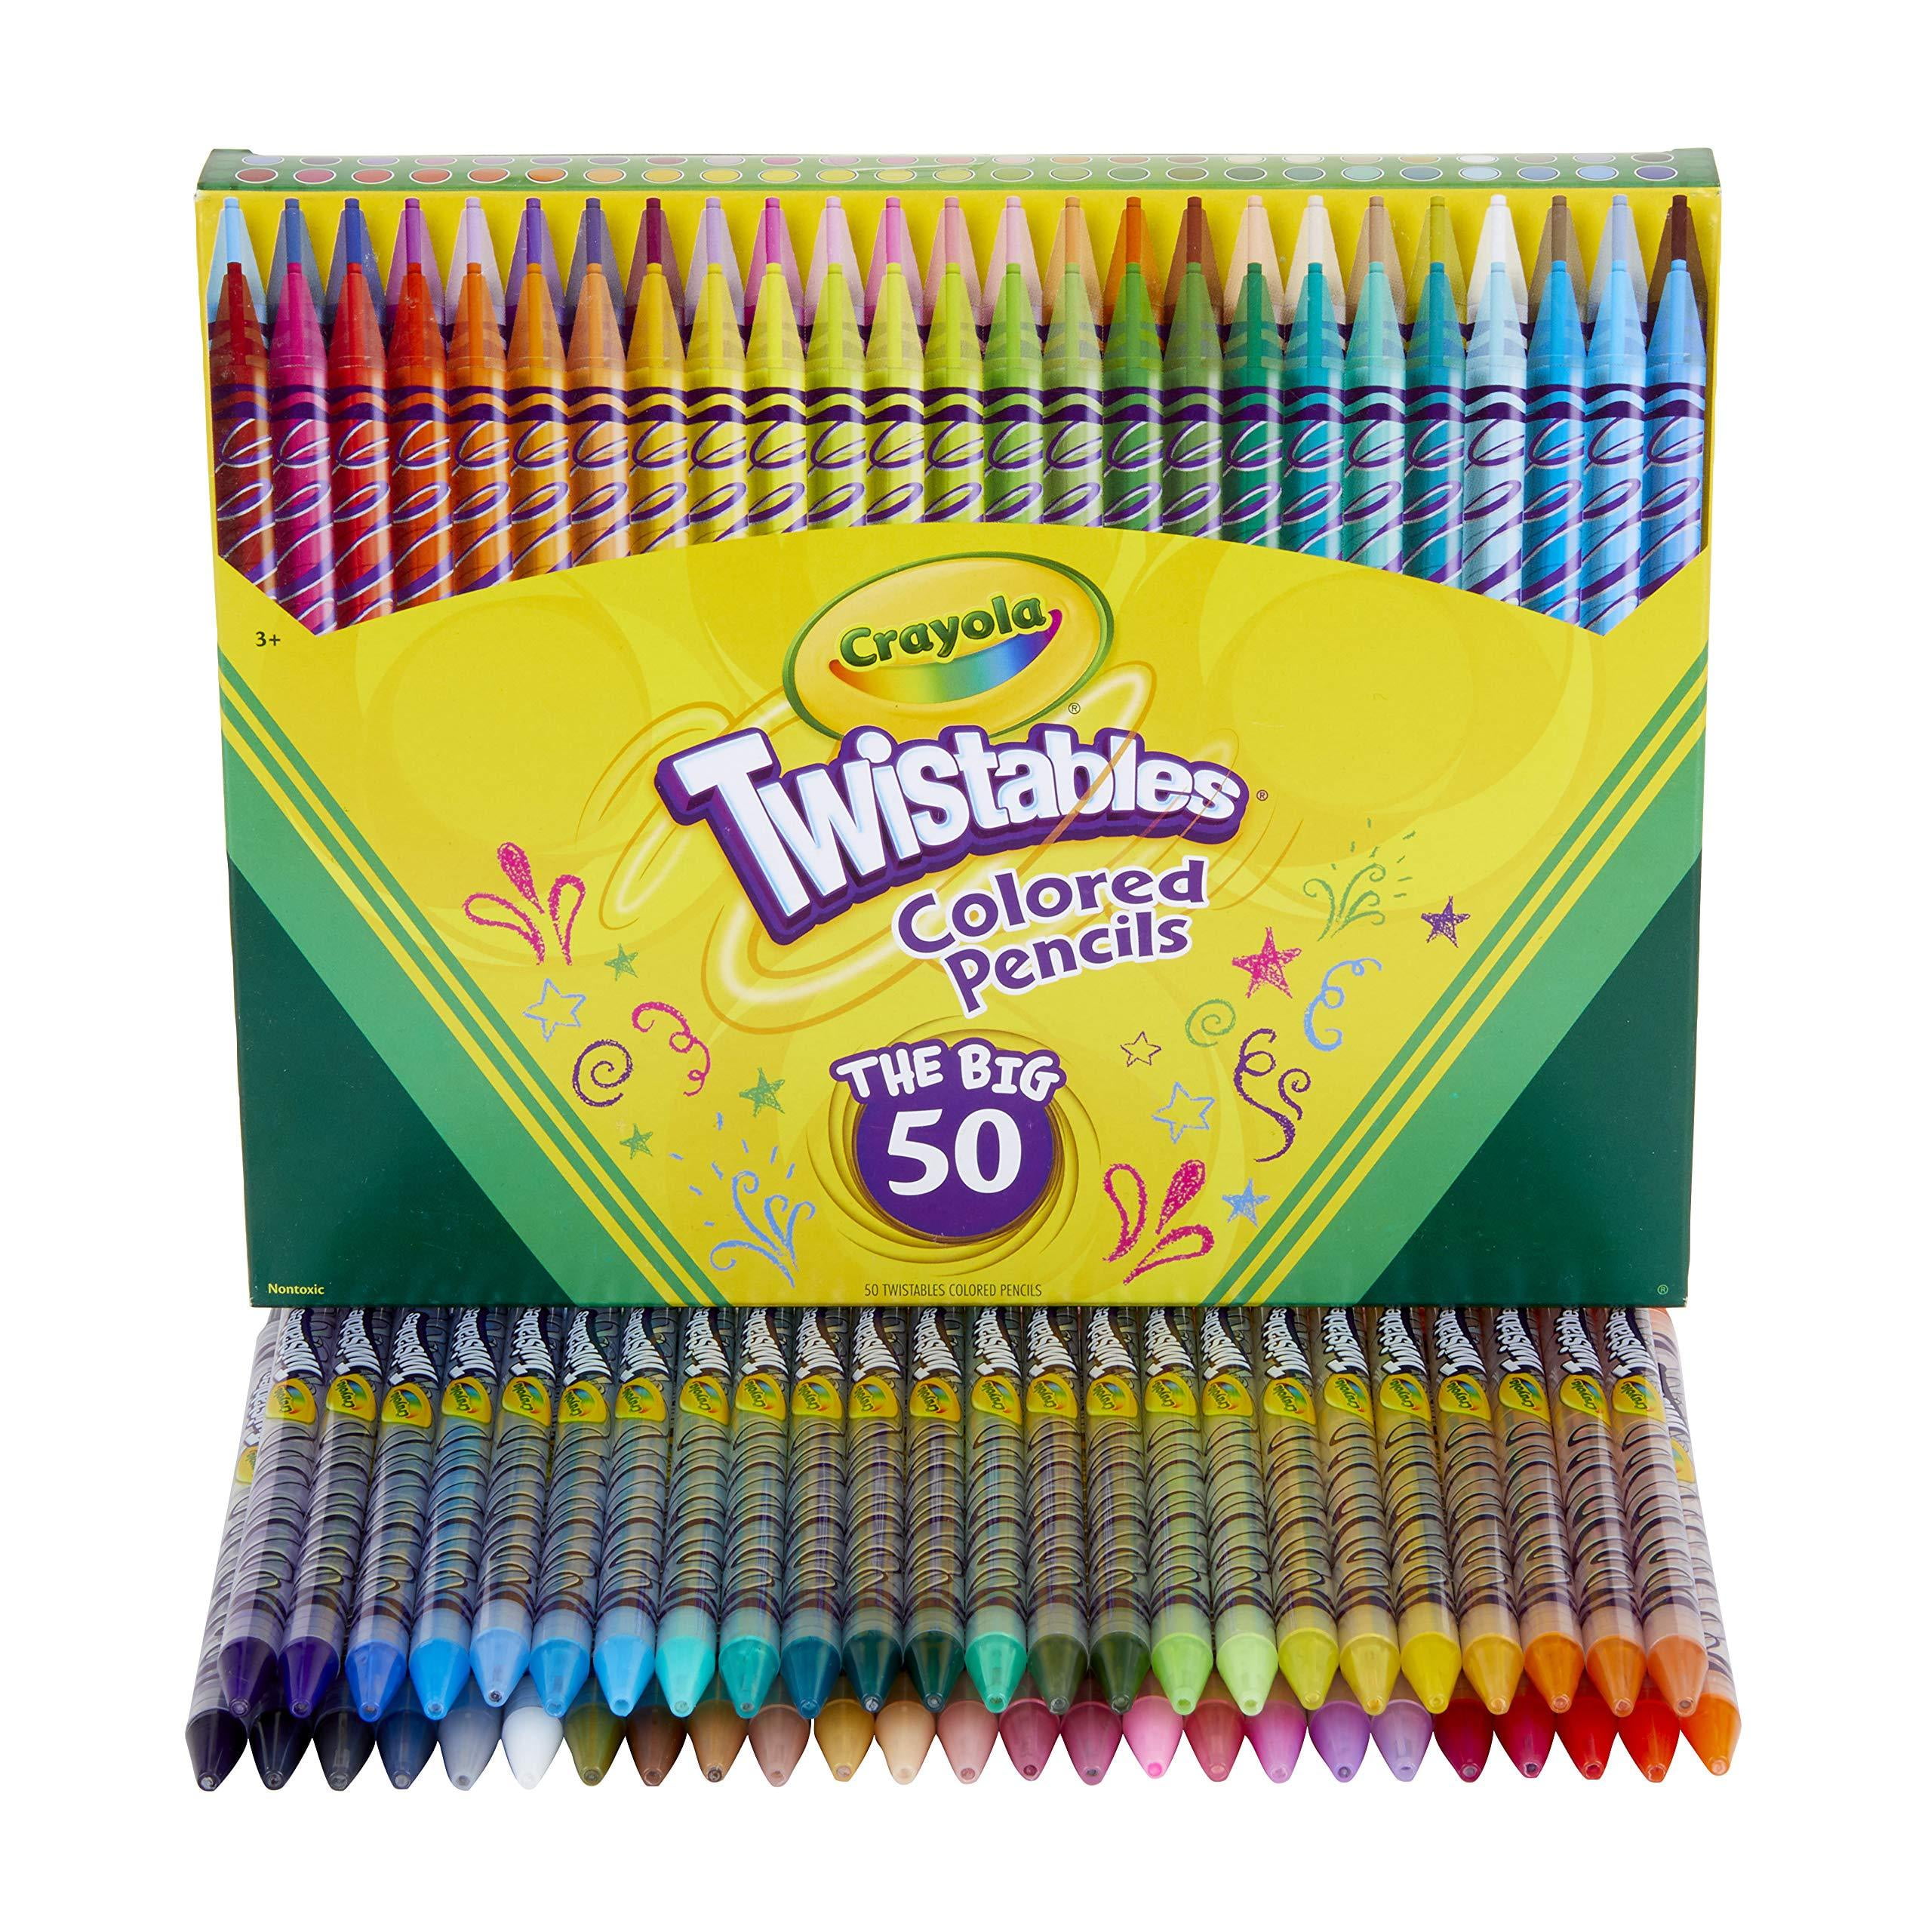 Crayola Twistable Colored Pencils (50 Pieces)